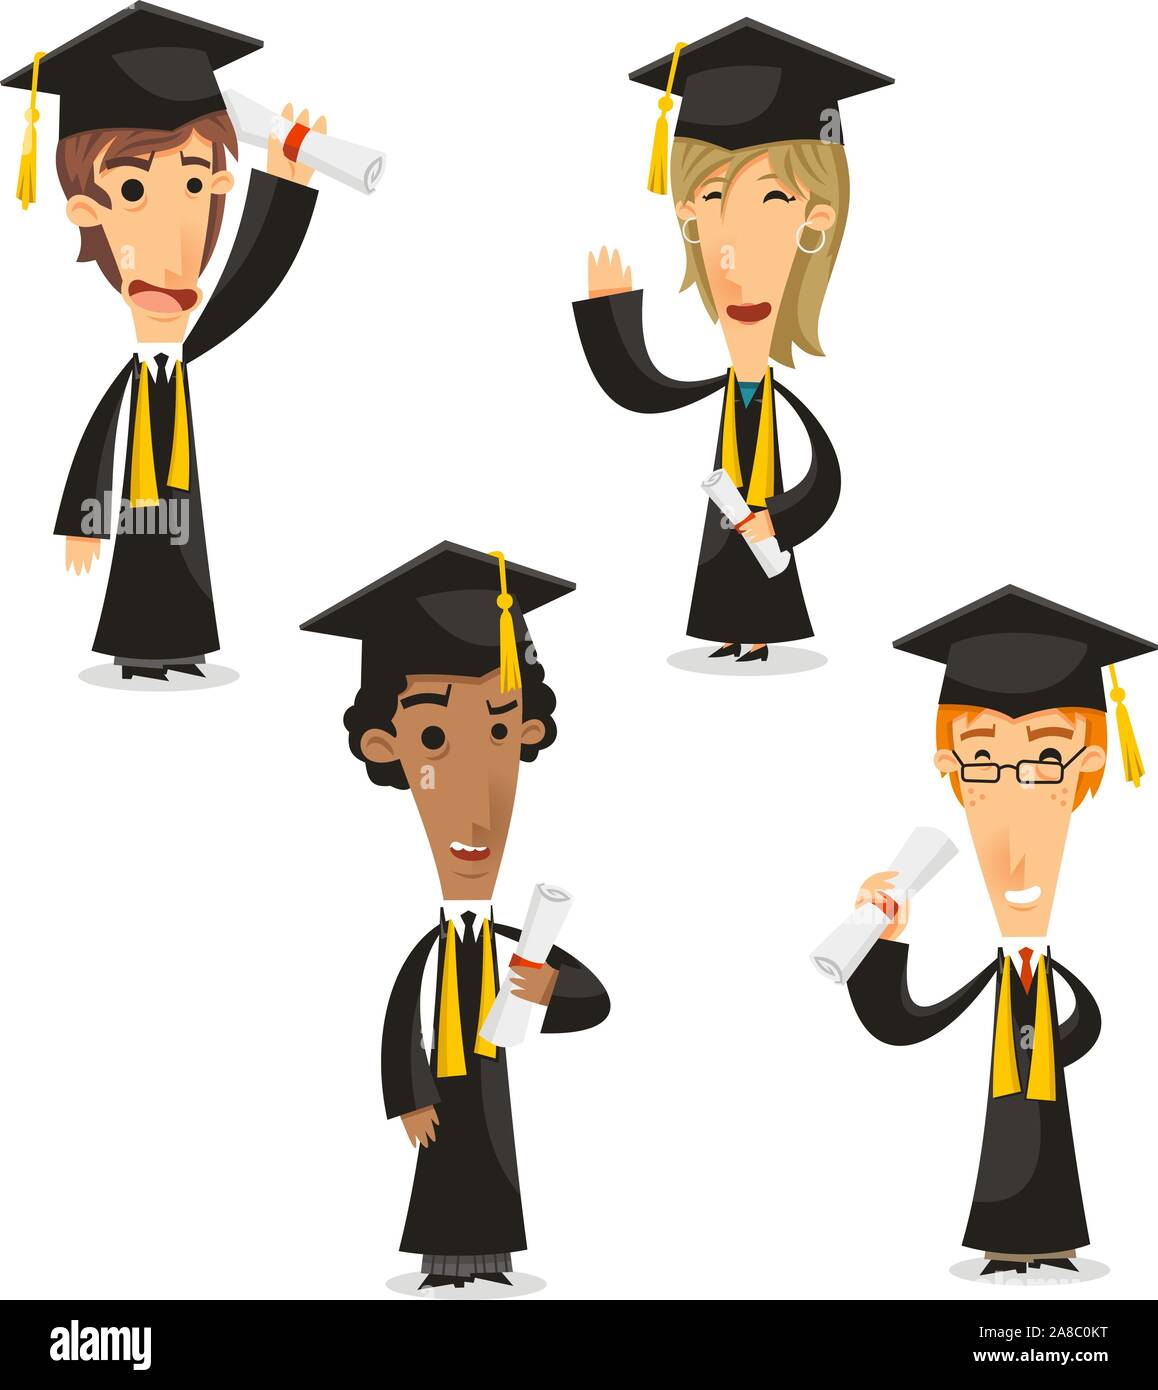 Les diplômés Bachelor master, doctorat, diplôme universitaire, vector illustration cartoon.doctorat Illustration de Vecteur